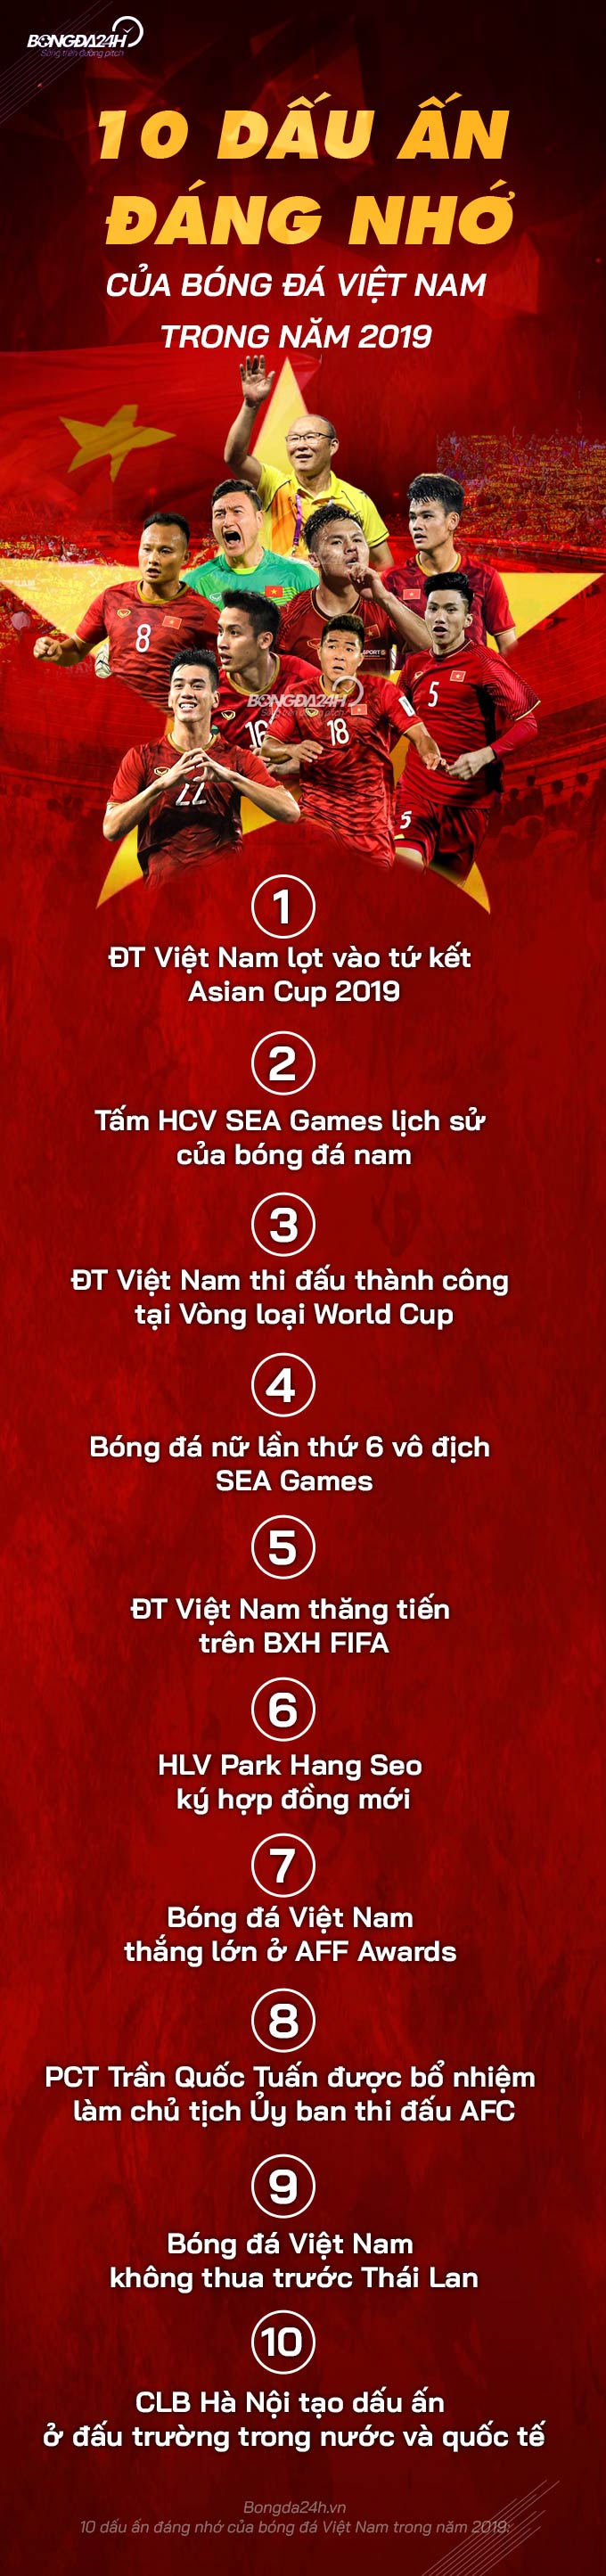 10 dau an dang nho cua bong da Viet Nam trong nam 2019